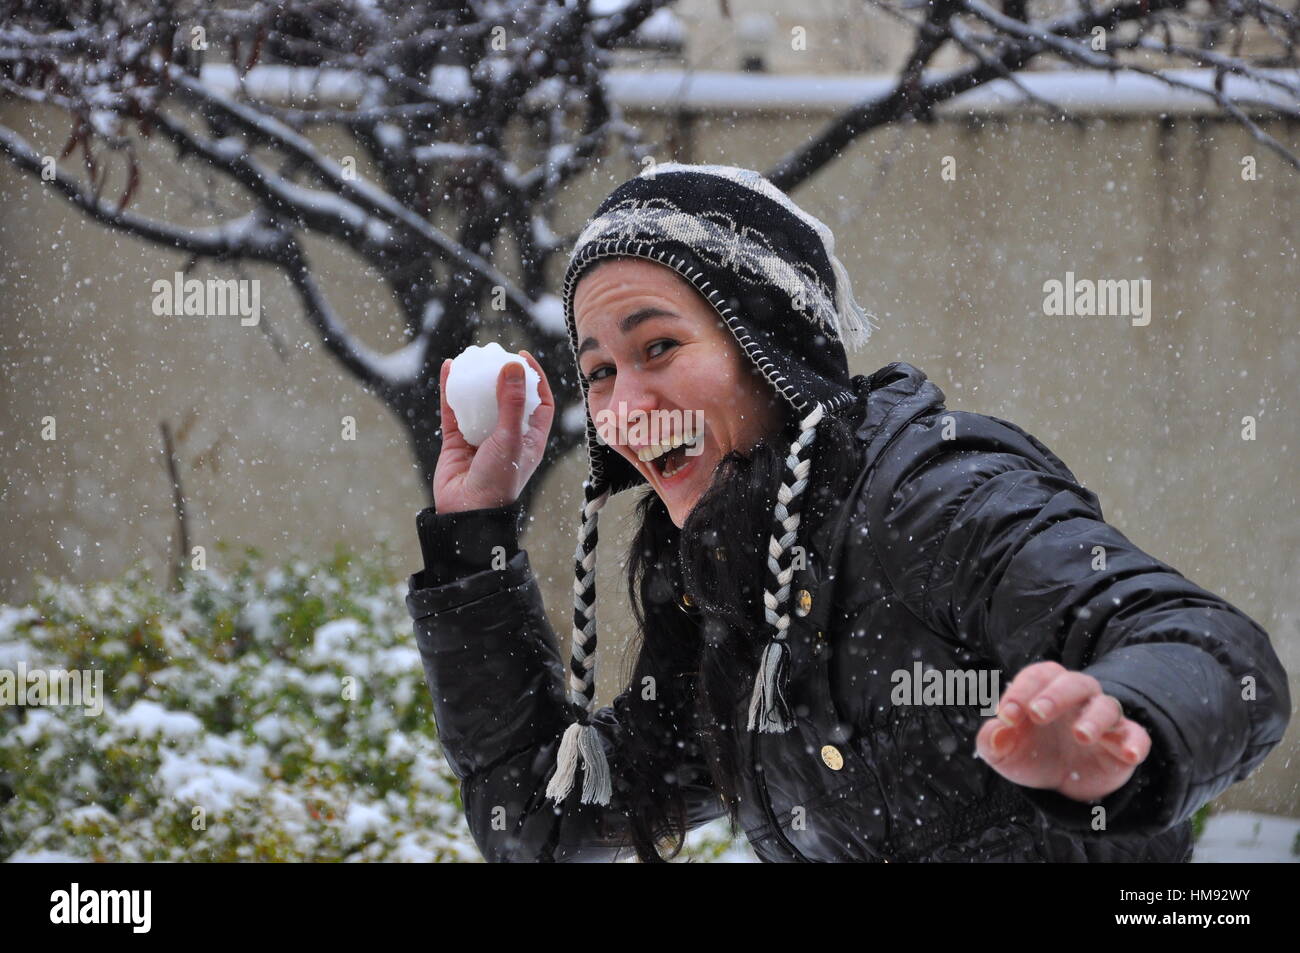 Schnee zu kämpfen, Frau spielt mit Schneeball Stockfoto